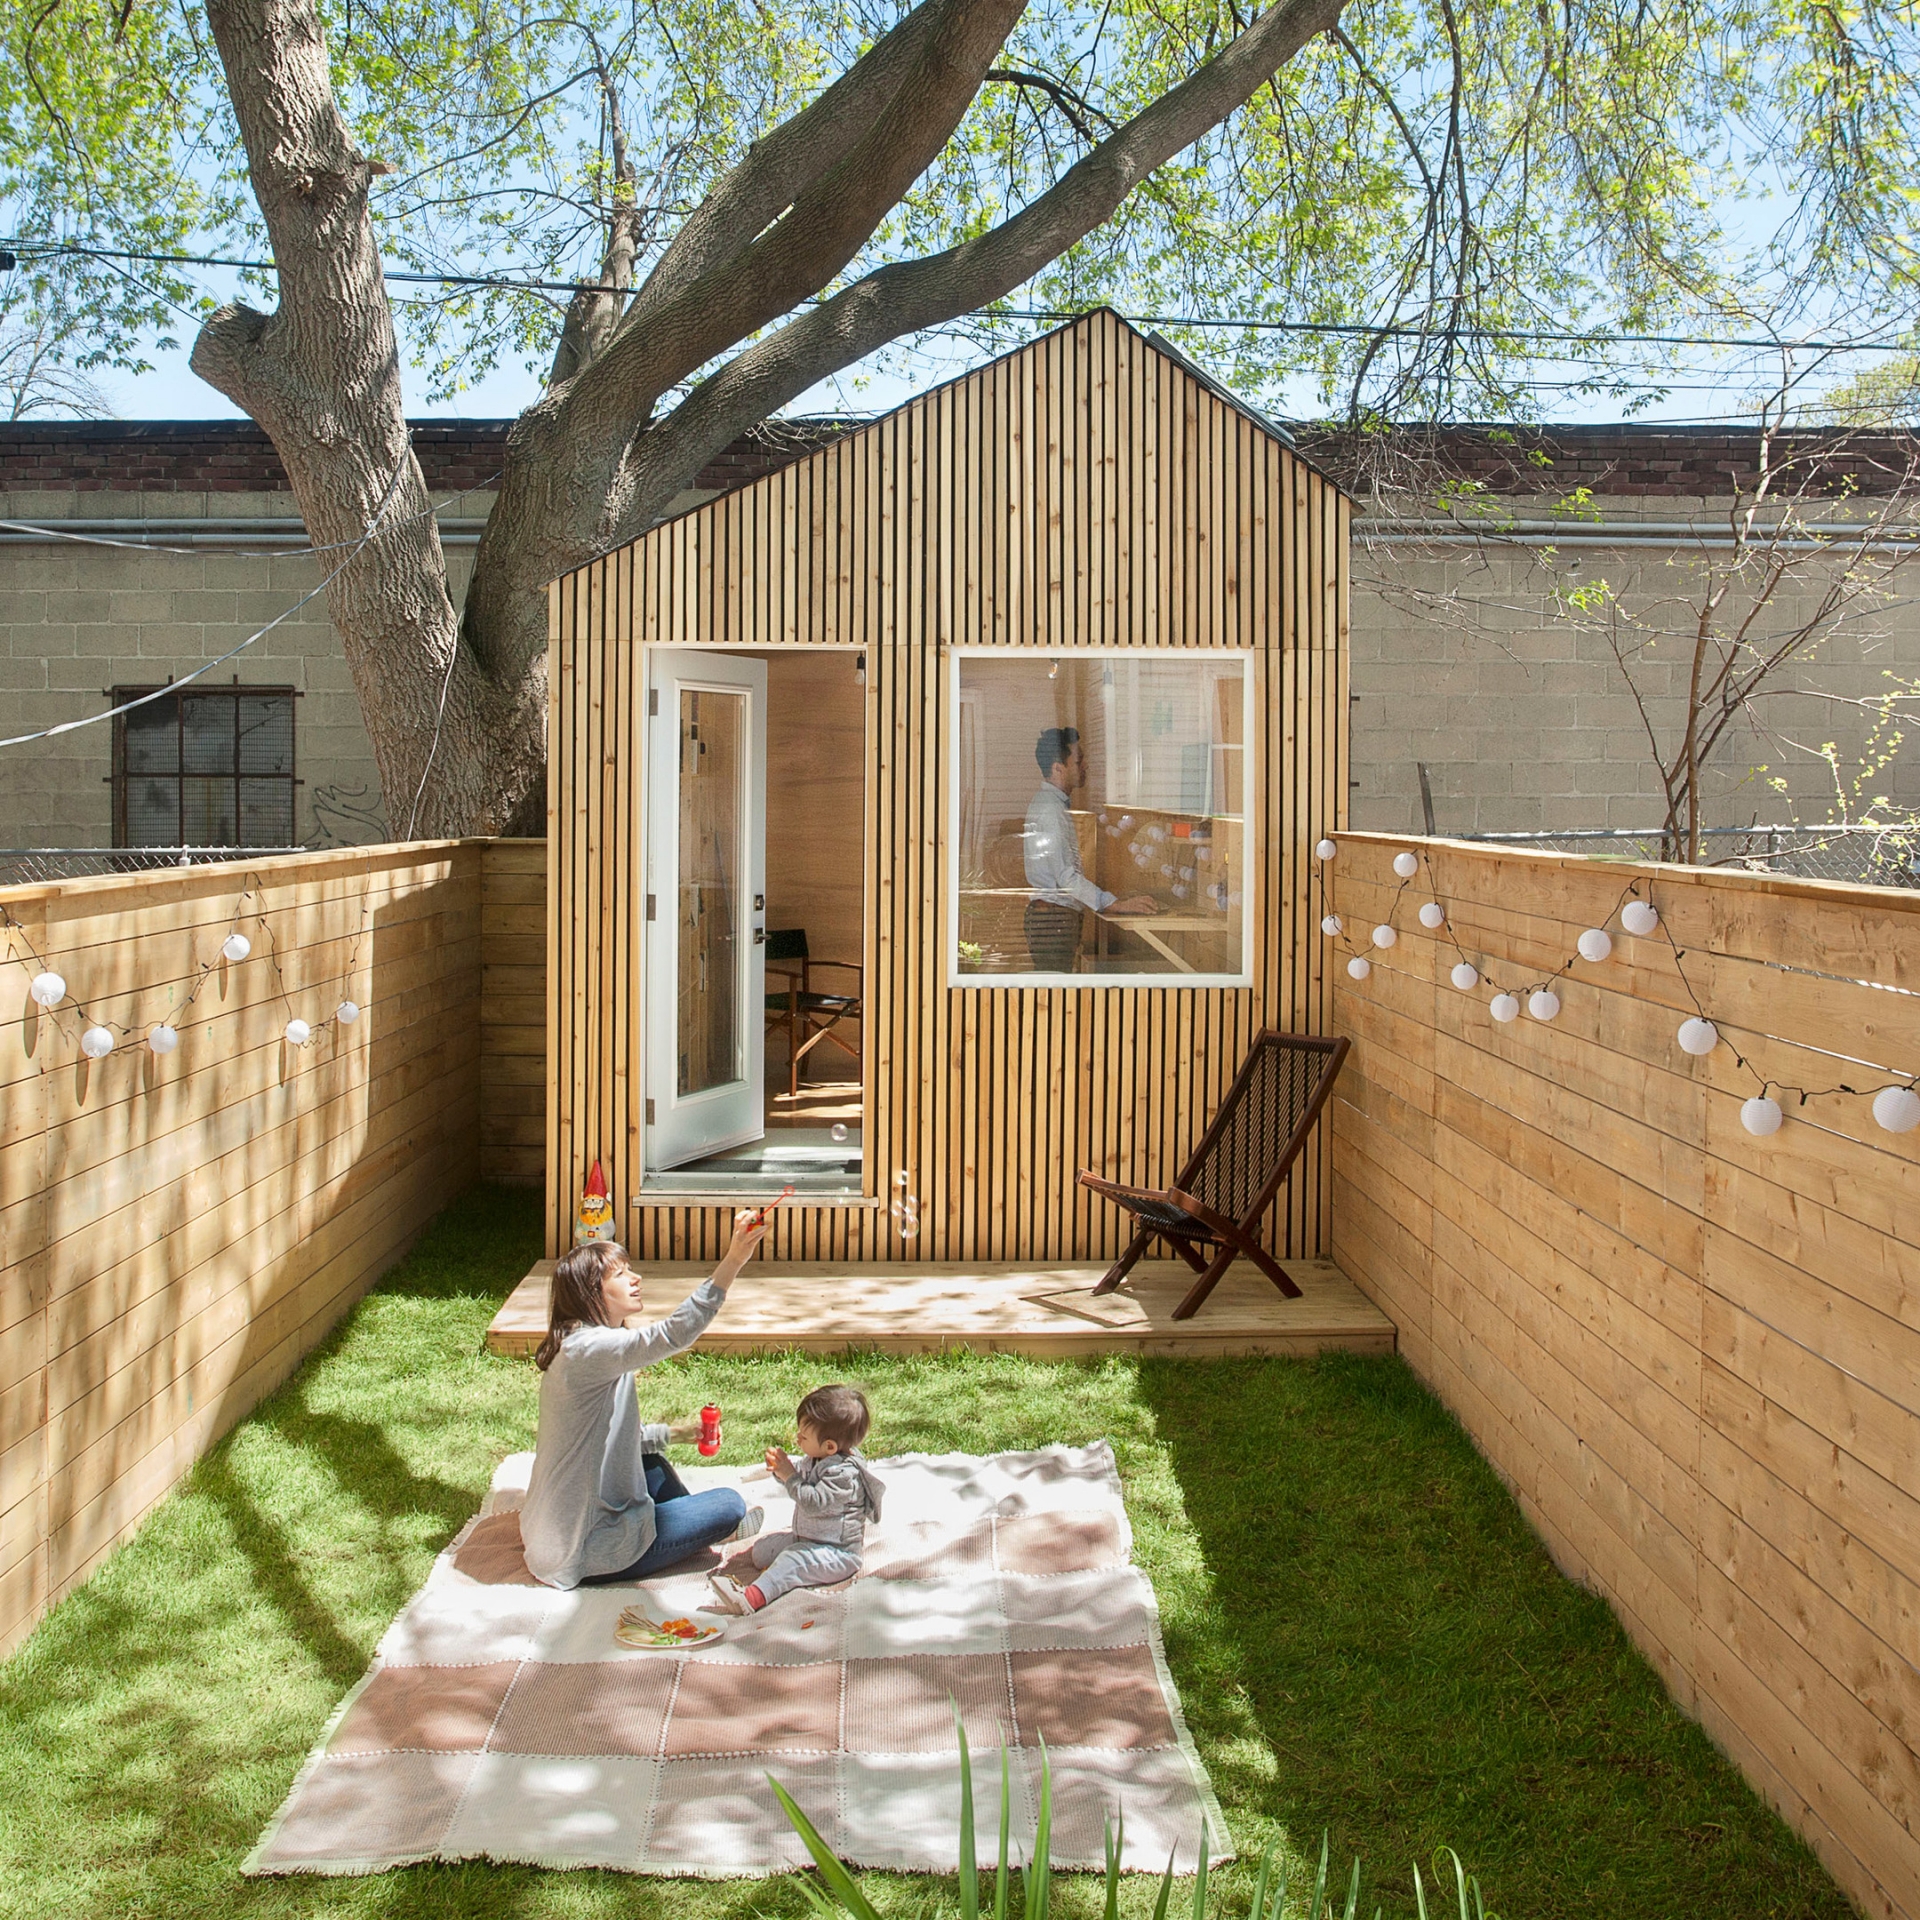 Six Four Five A Studio đã hoàn thành dự án thiết kế Garden Studio cho gia đình nhỏ tại Toronto (Canada). Khu vực bên trong là phòng làm việc của bố, khoảng sân ngập tràn nắng ấm, cỏ xanh là nơi chơi đùa của 2 mẹ con.